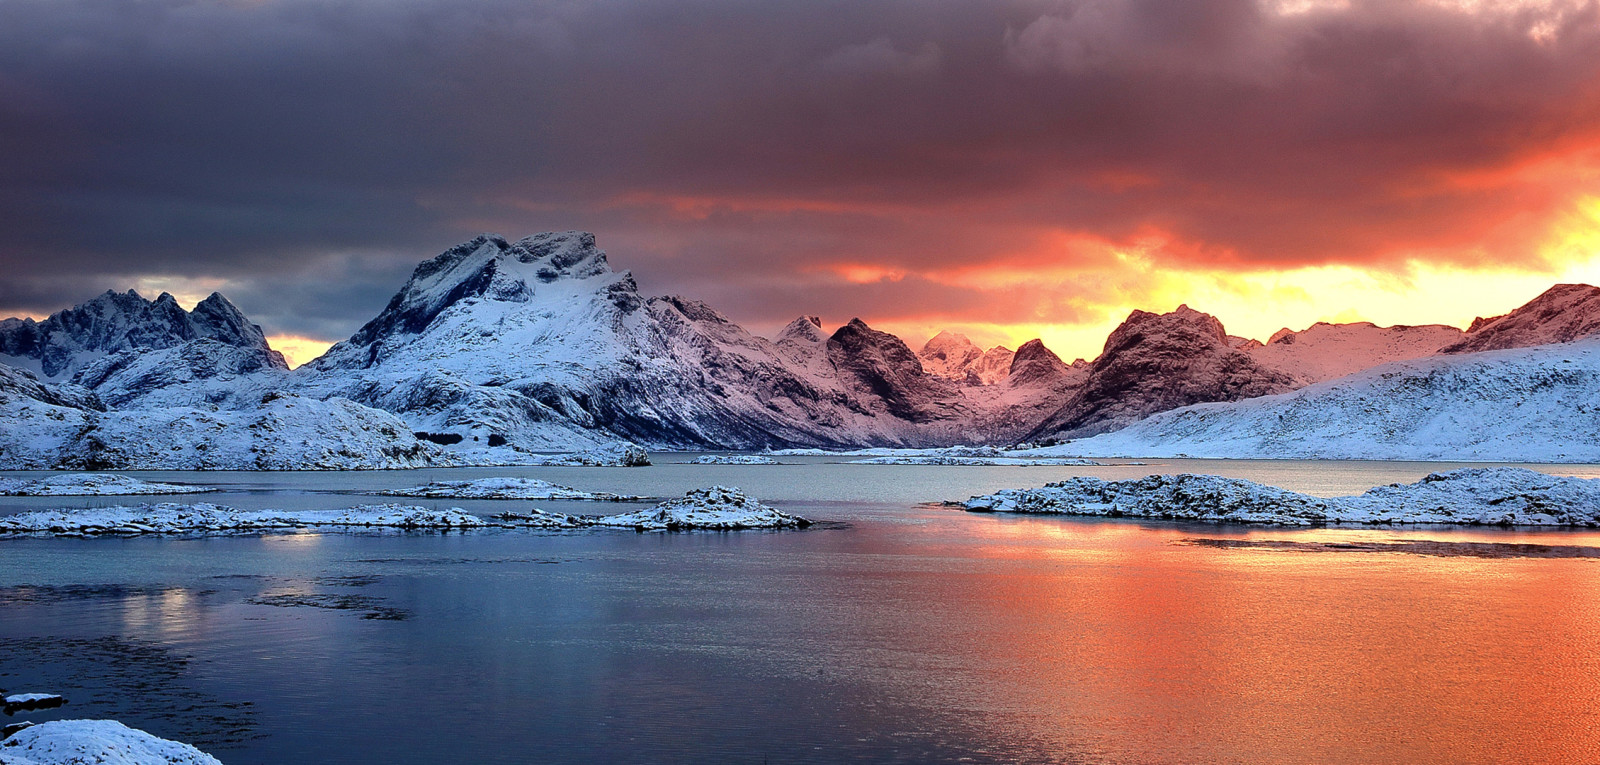 눈, 호수, 빙, 겨울, 등, 오로라, 별, 아이슬란드